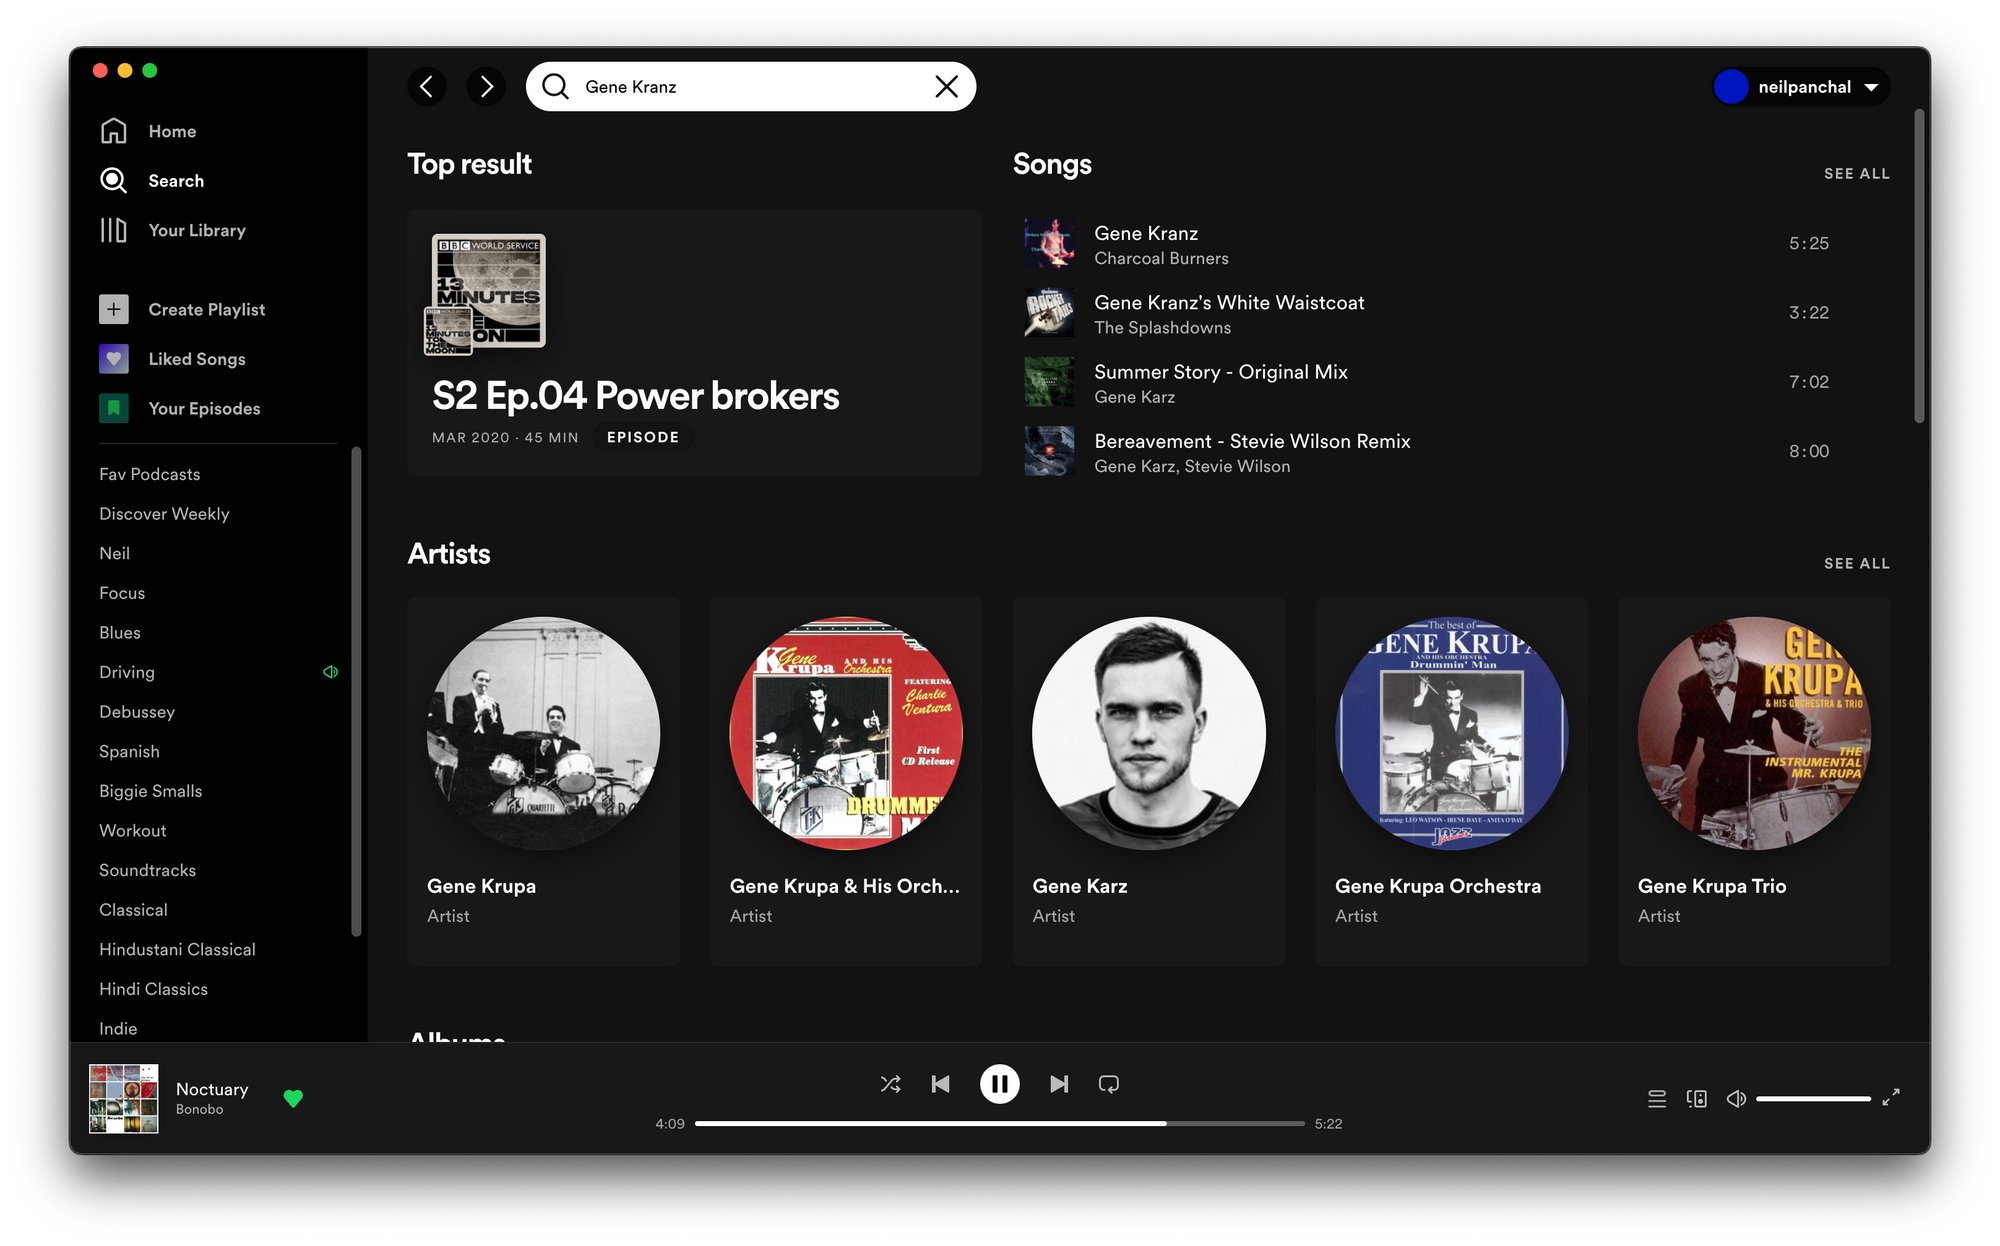 Dedouze Radio - playlist by Spotify